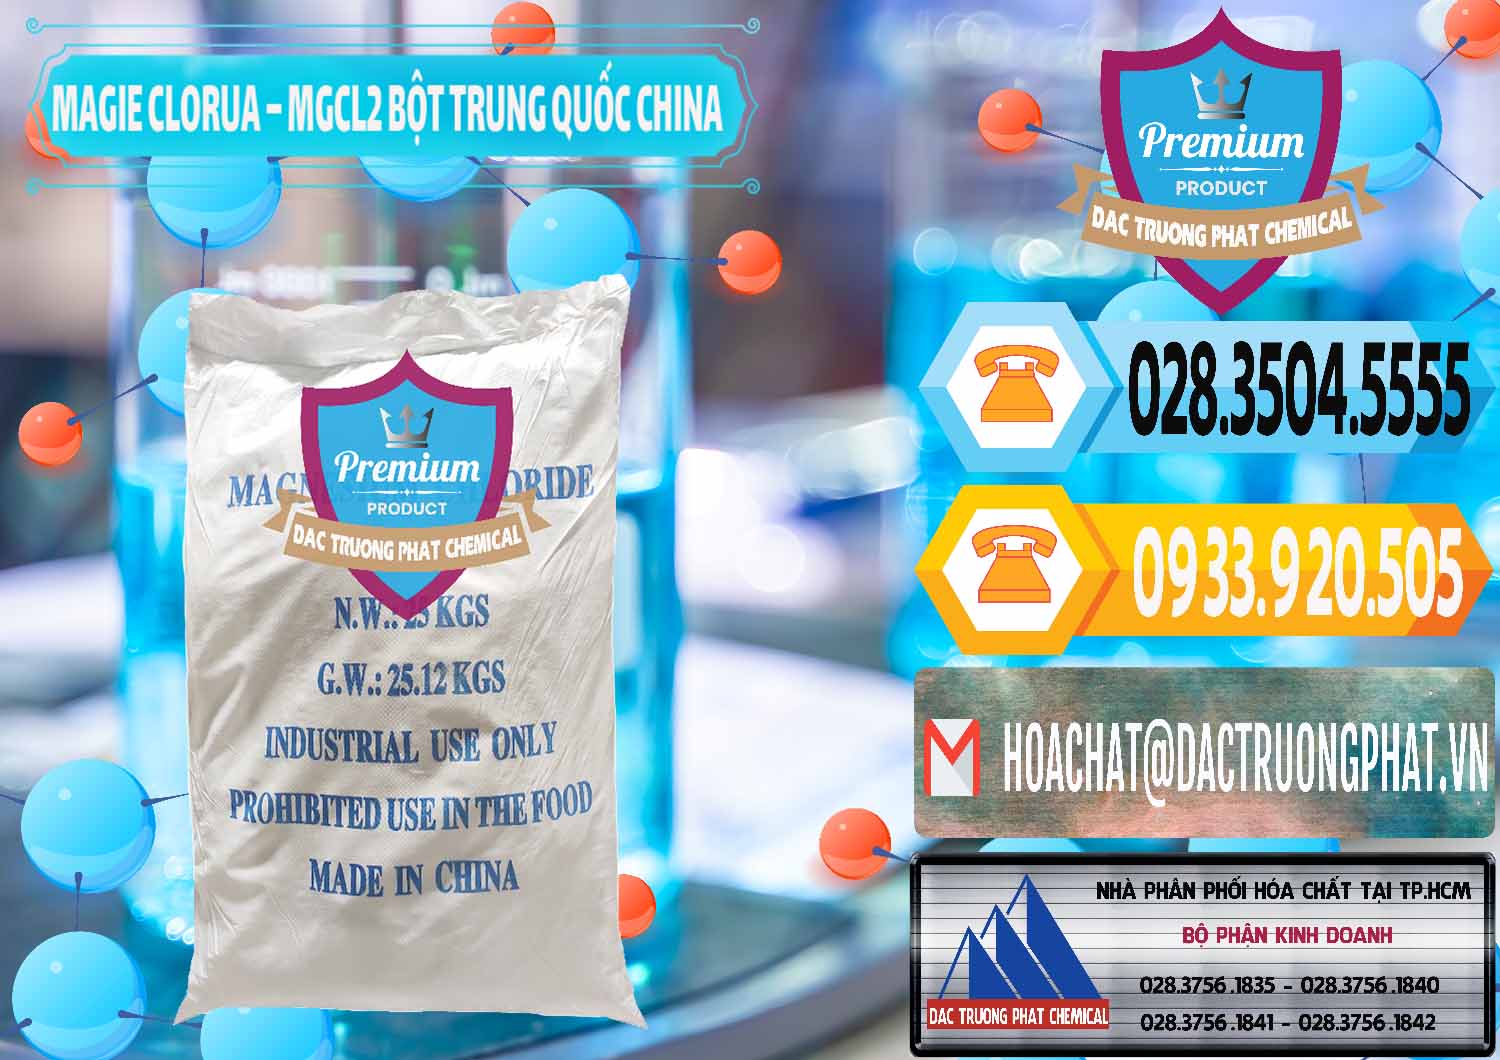 Đơn vị bán _ phân phối Magie Clorua – MGCL2 96% Dạng Bột Bao Chữ Xanh Trung Quốc China - 0207 - Cung cấp ( phân phối ) hóa chất tại TP.HCM - hoachattayrua.net